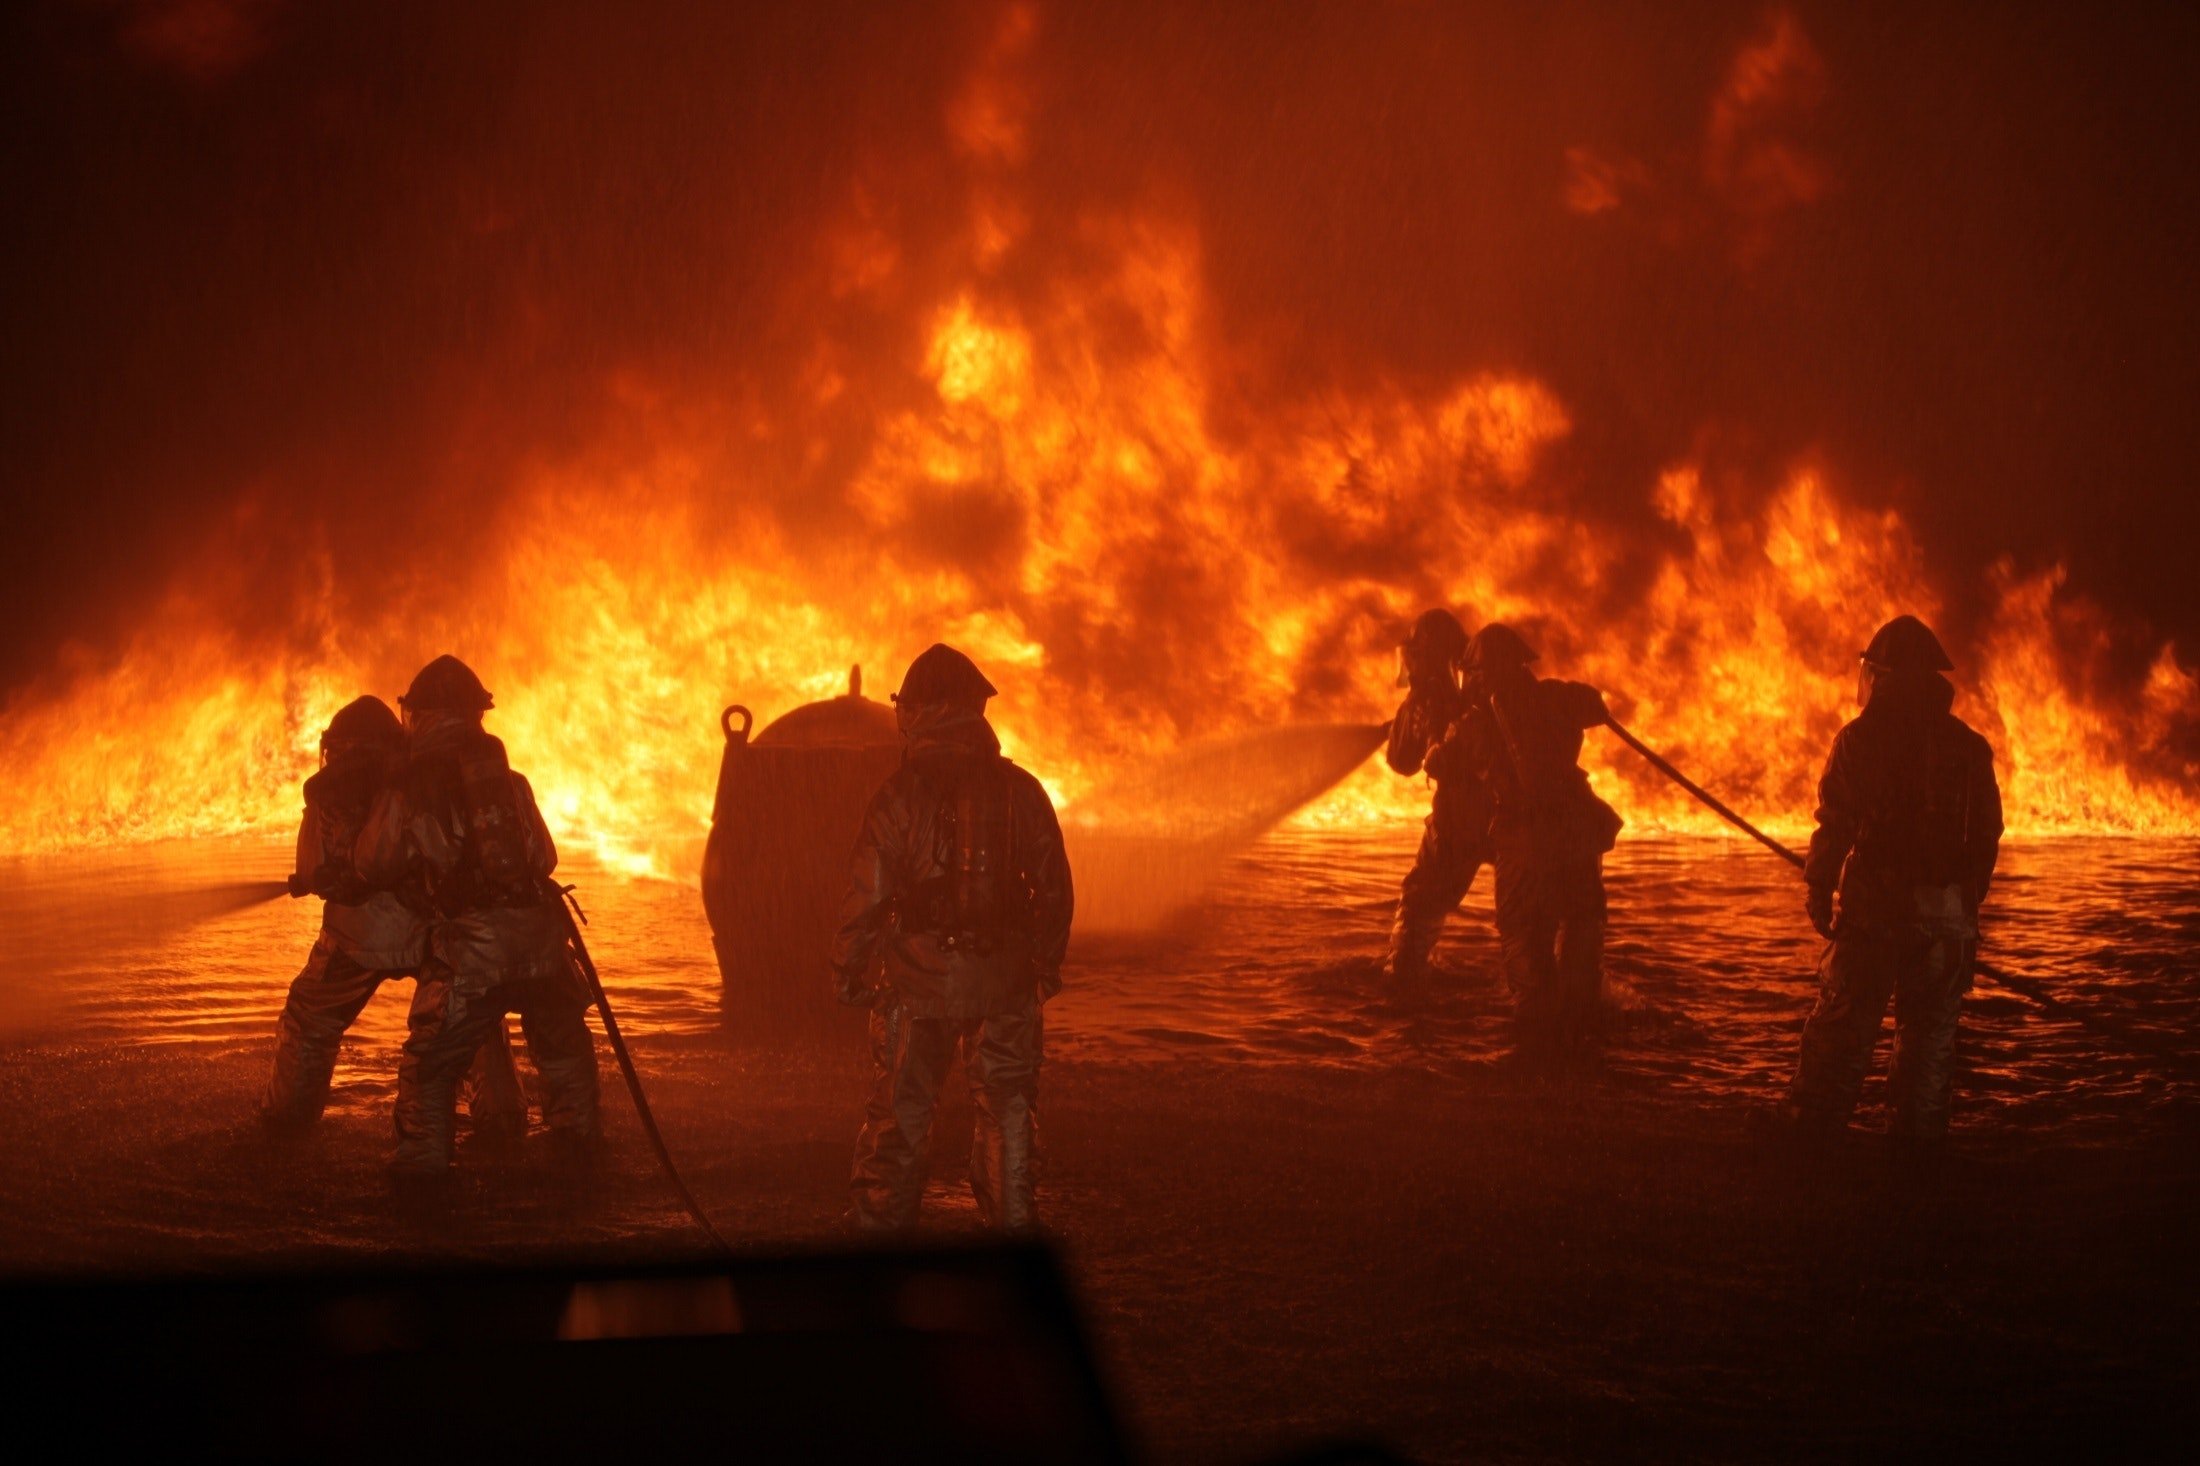 Waldbrand-Früherkennung mit KI kann Katastrophen verhindern